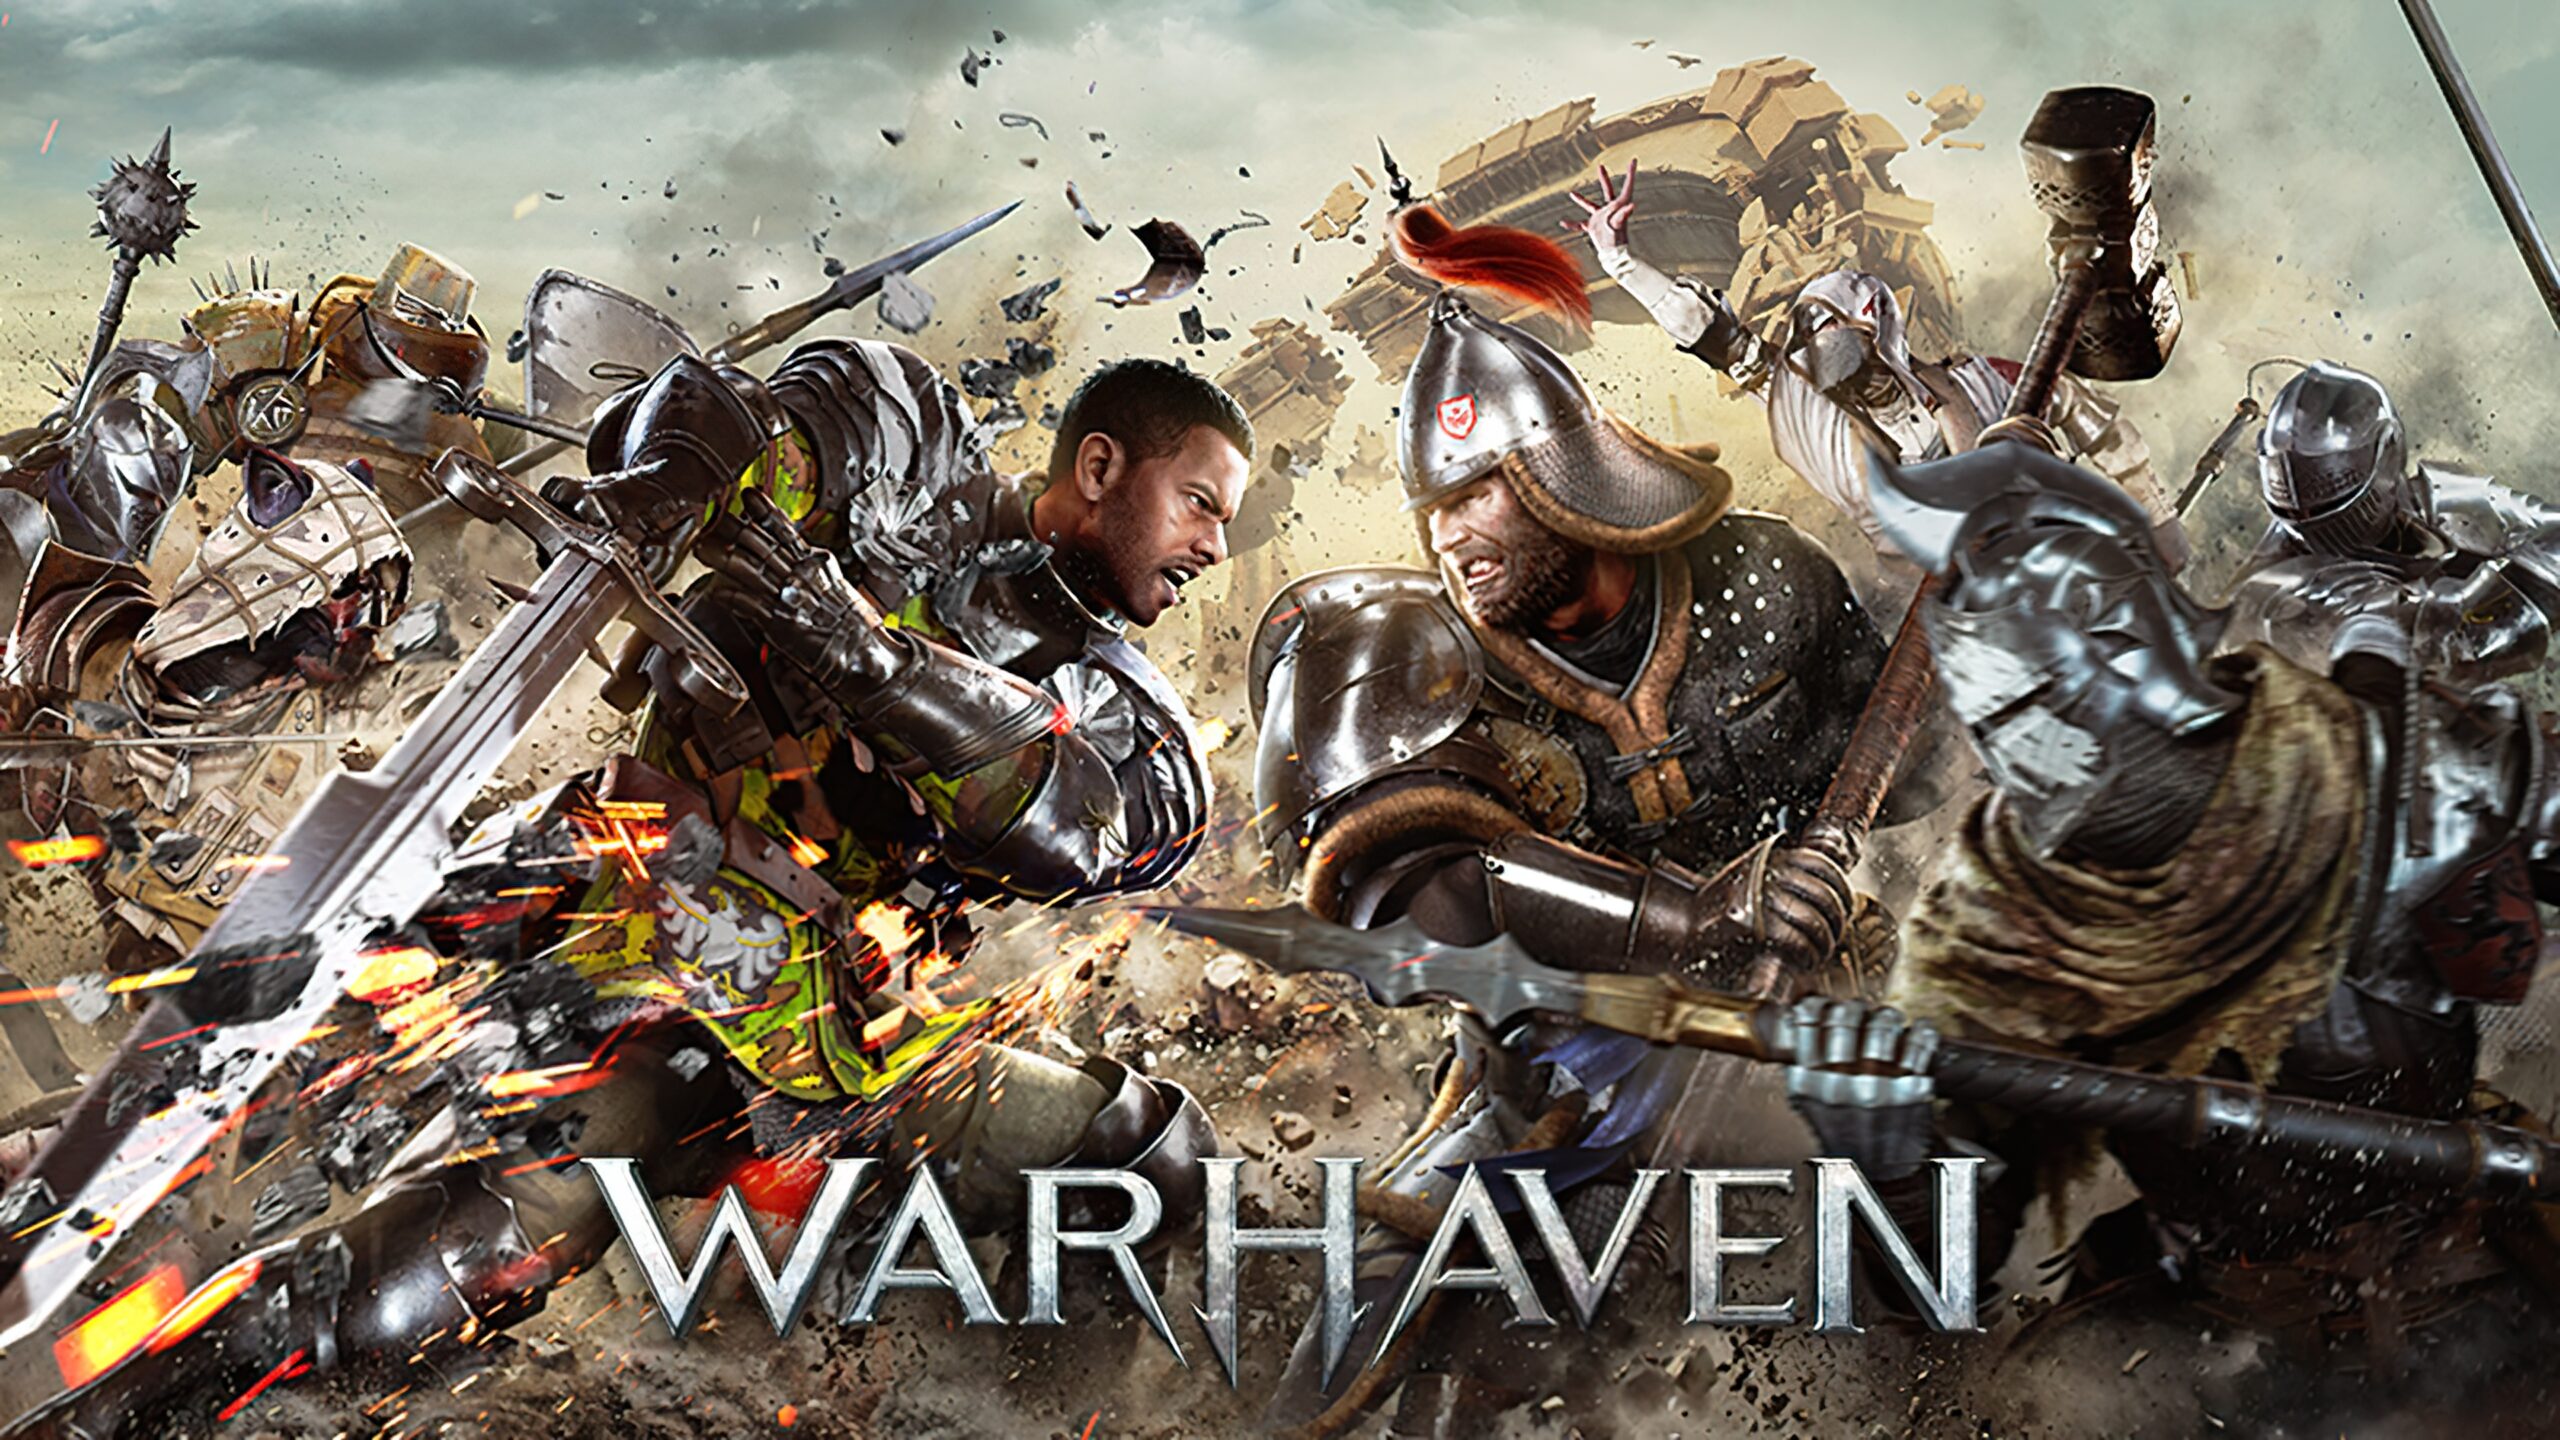 Twórcy Warhaven opublikowali nowy zwiastun gry, w którym w szczególności ogłosili datę premiery we wczesnym dostępie - 21 września